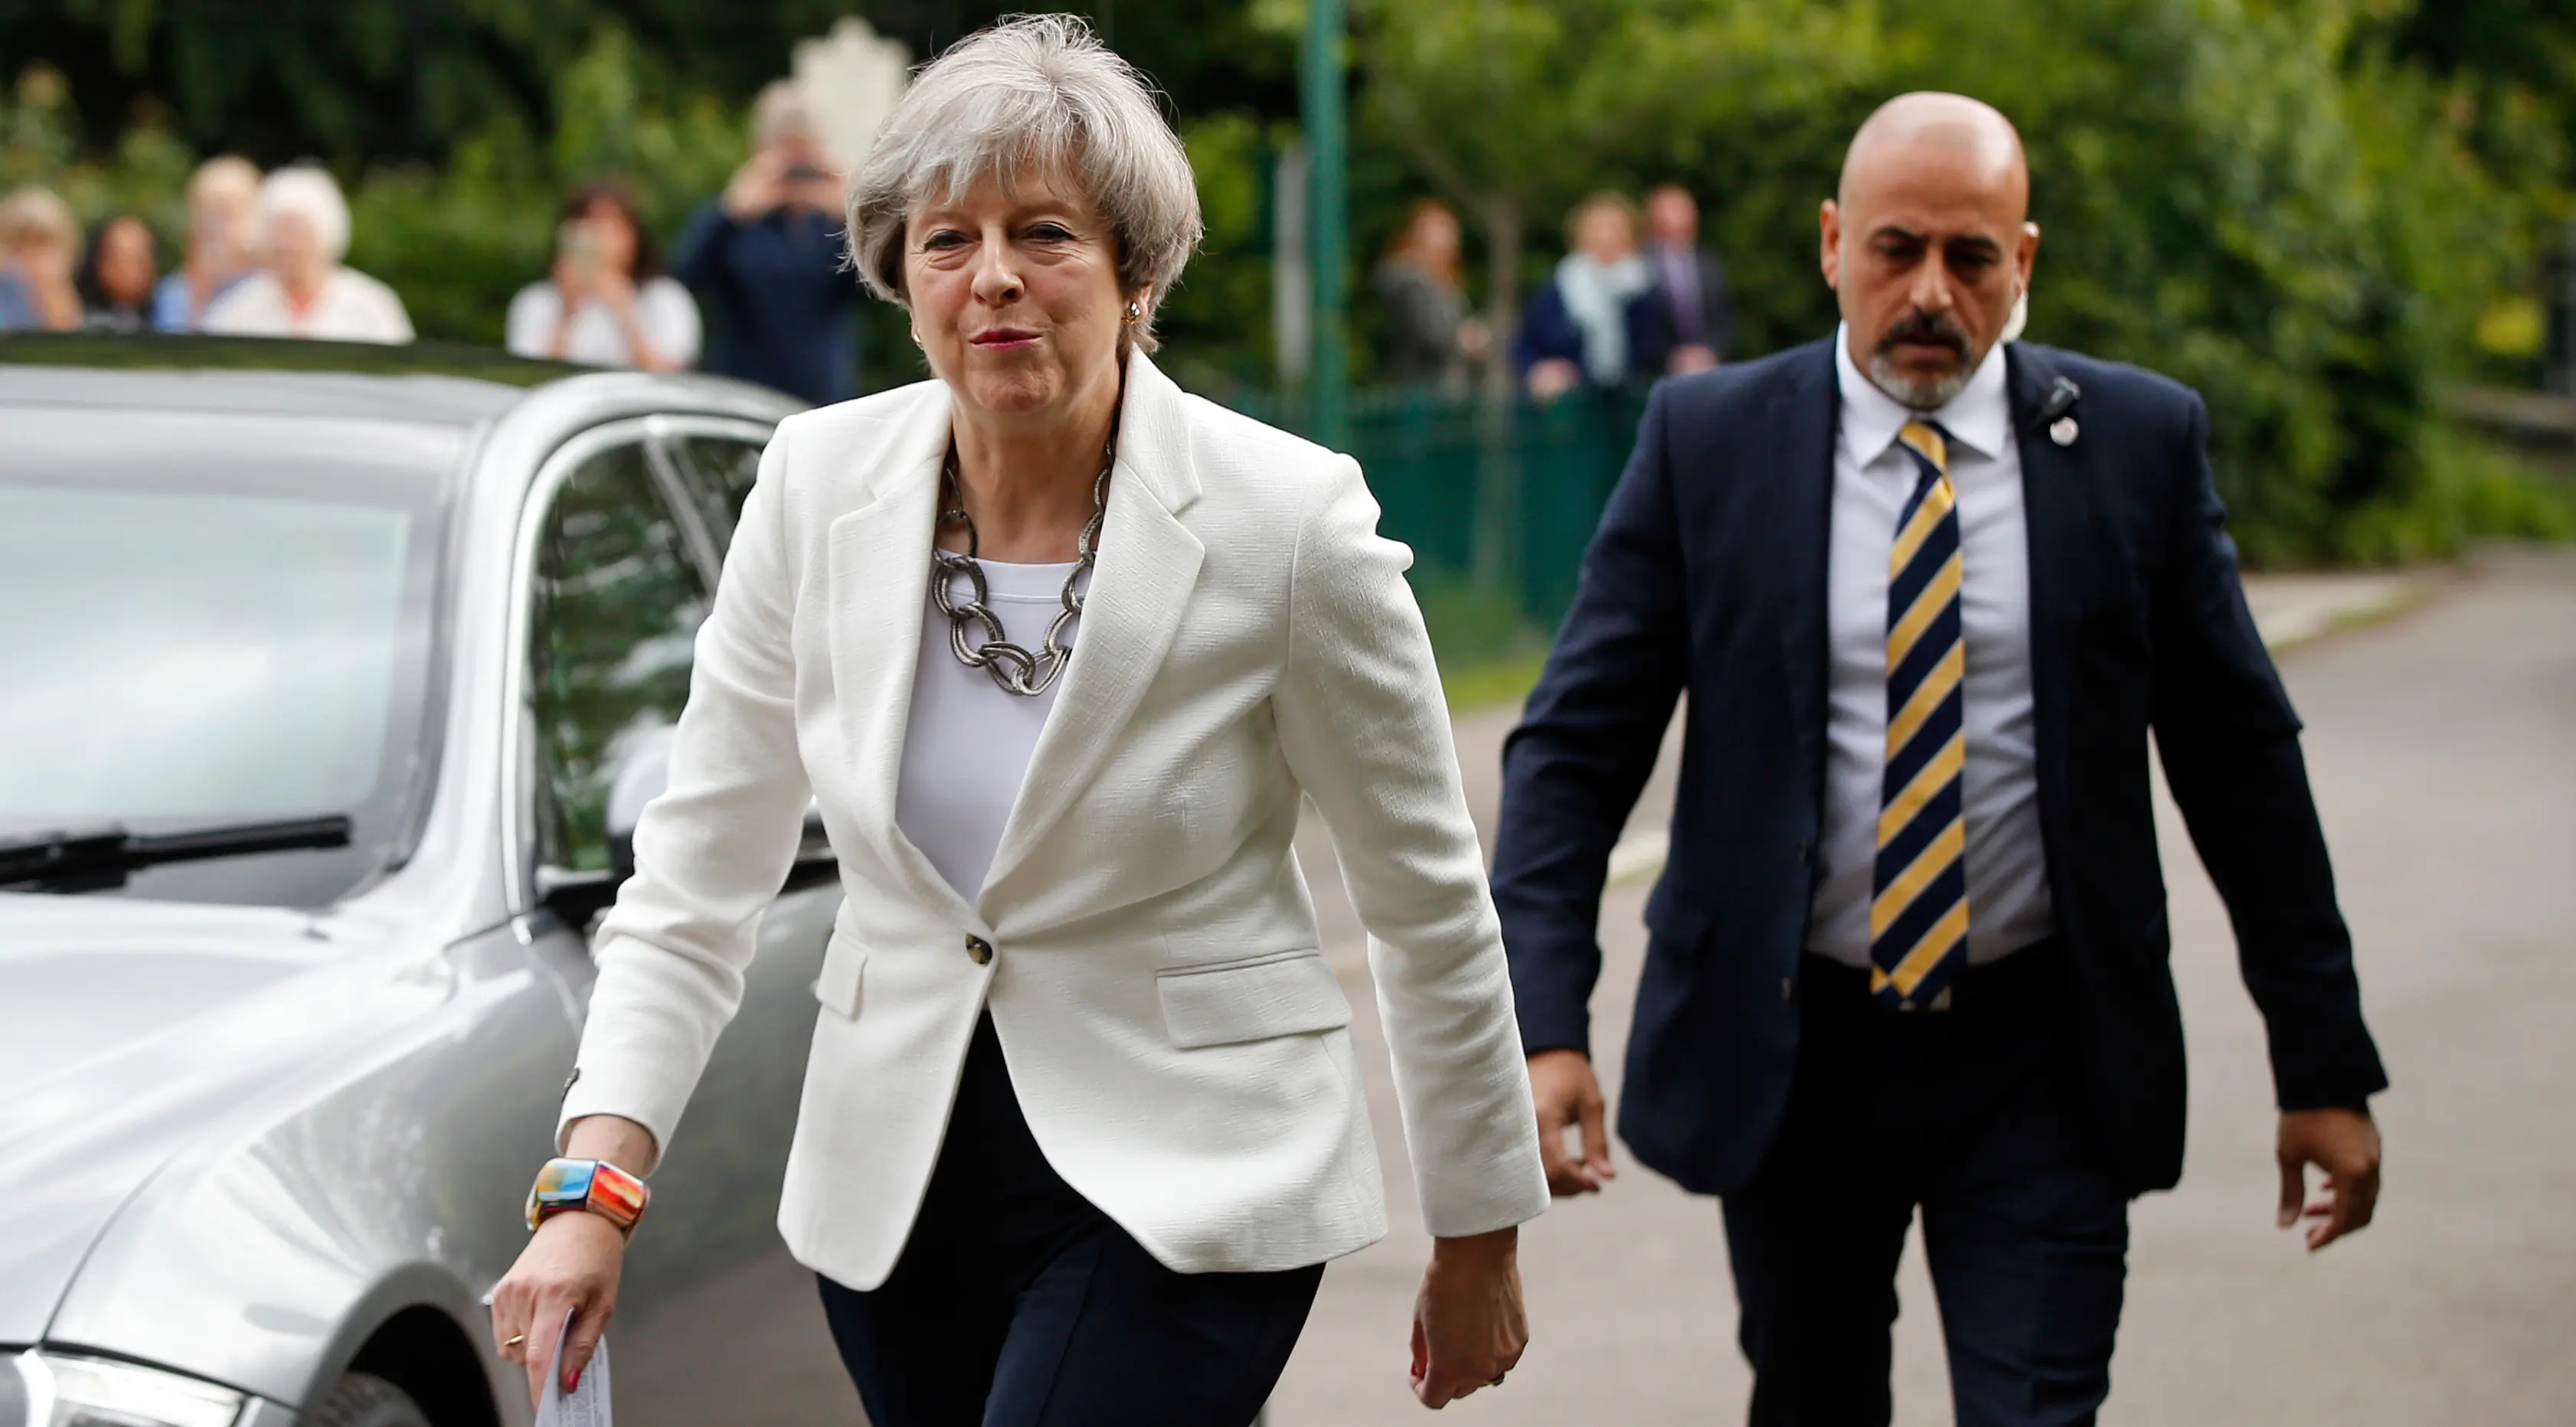 PM Inggris Theresa May mendatangi TPS Kota Maidenhead untuk memberikan suaranya dalam pemilu Inggris, Kamis (8/6). Sebanyak 650 anggota parlemen Westminster akan dipilih, dengan sekitar 46,9 juta orang terdaftar untuk memilih. (AP Photo/Alastair Grant)